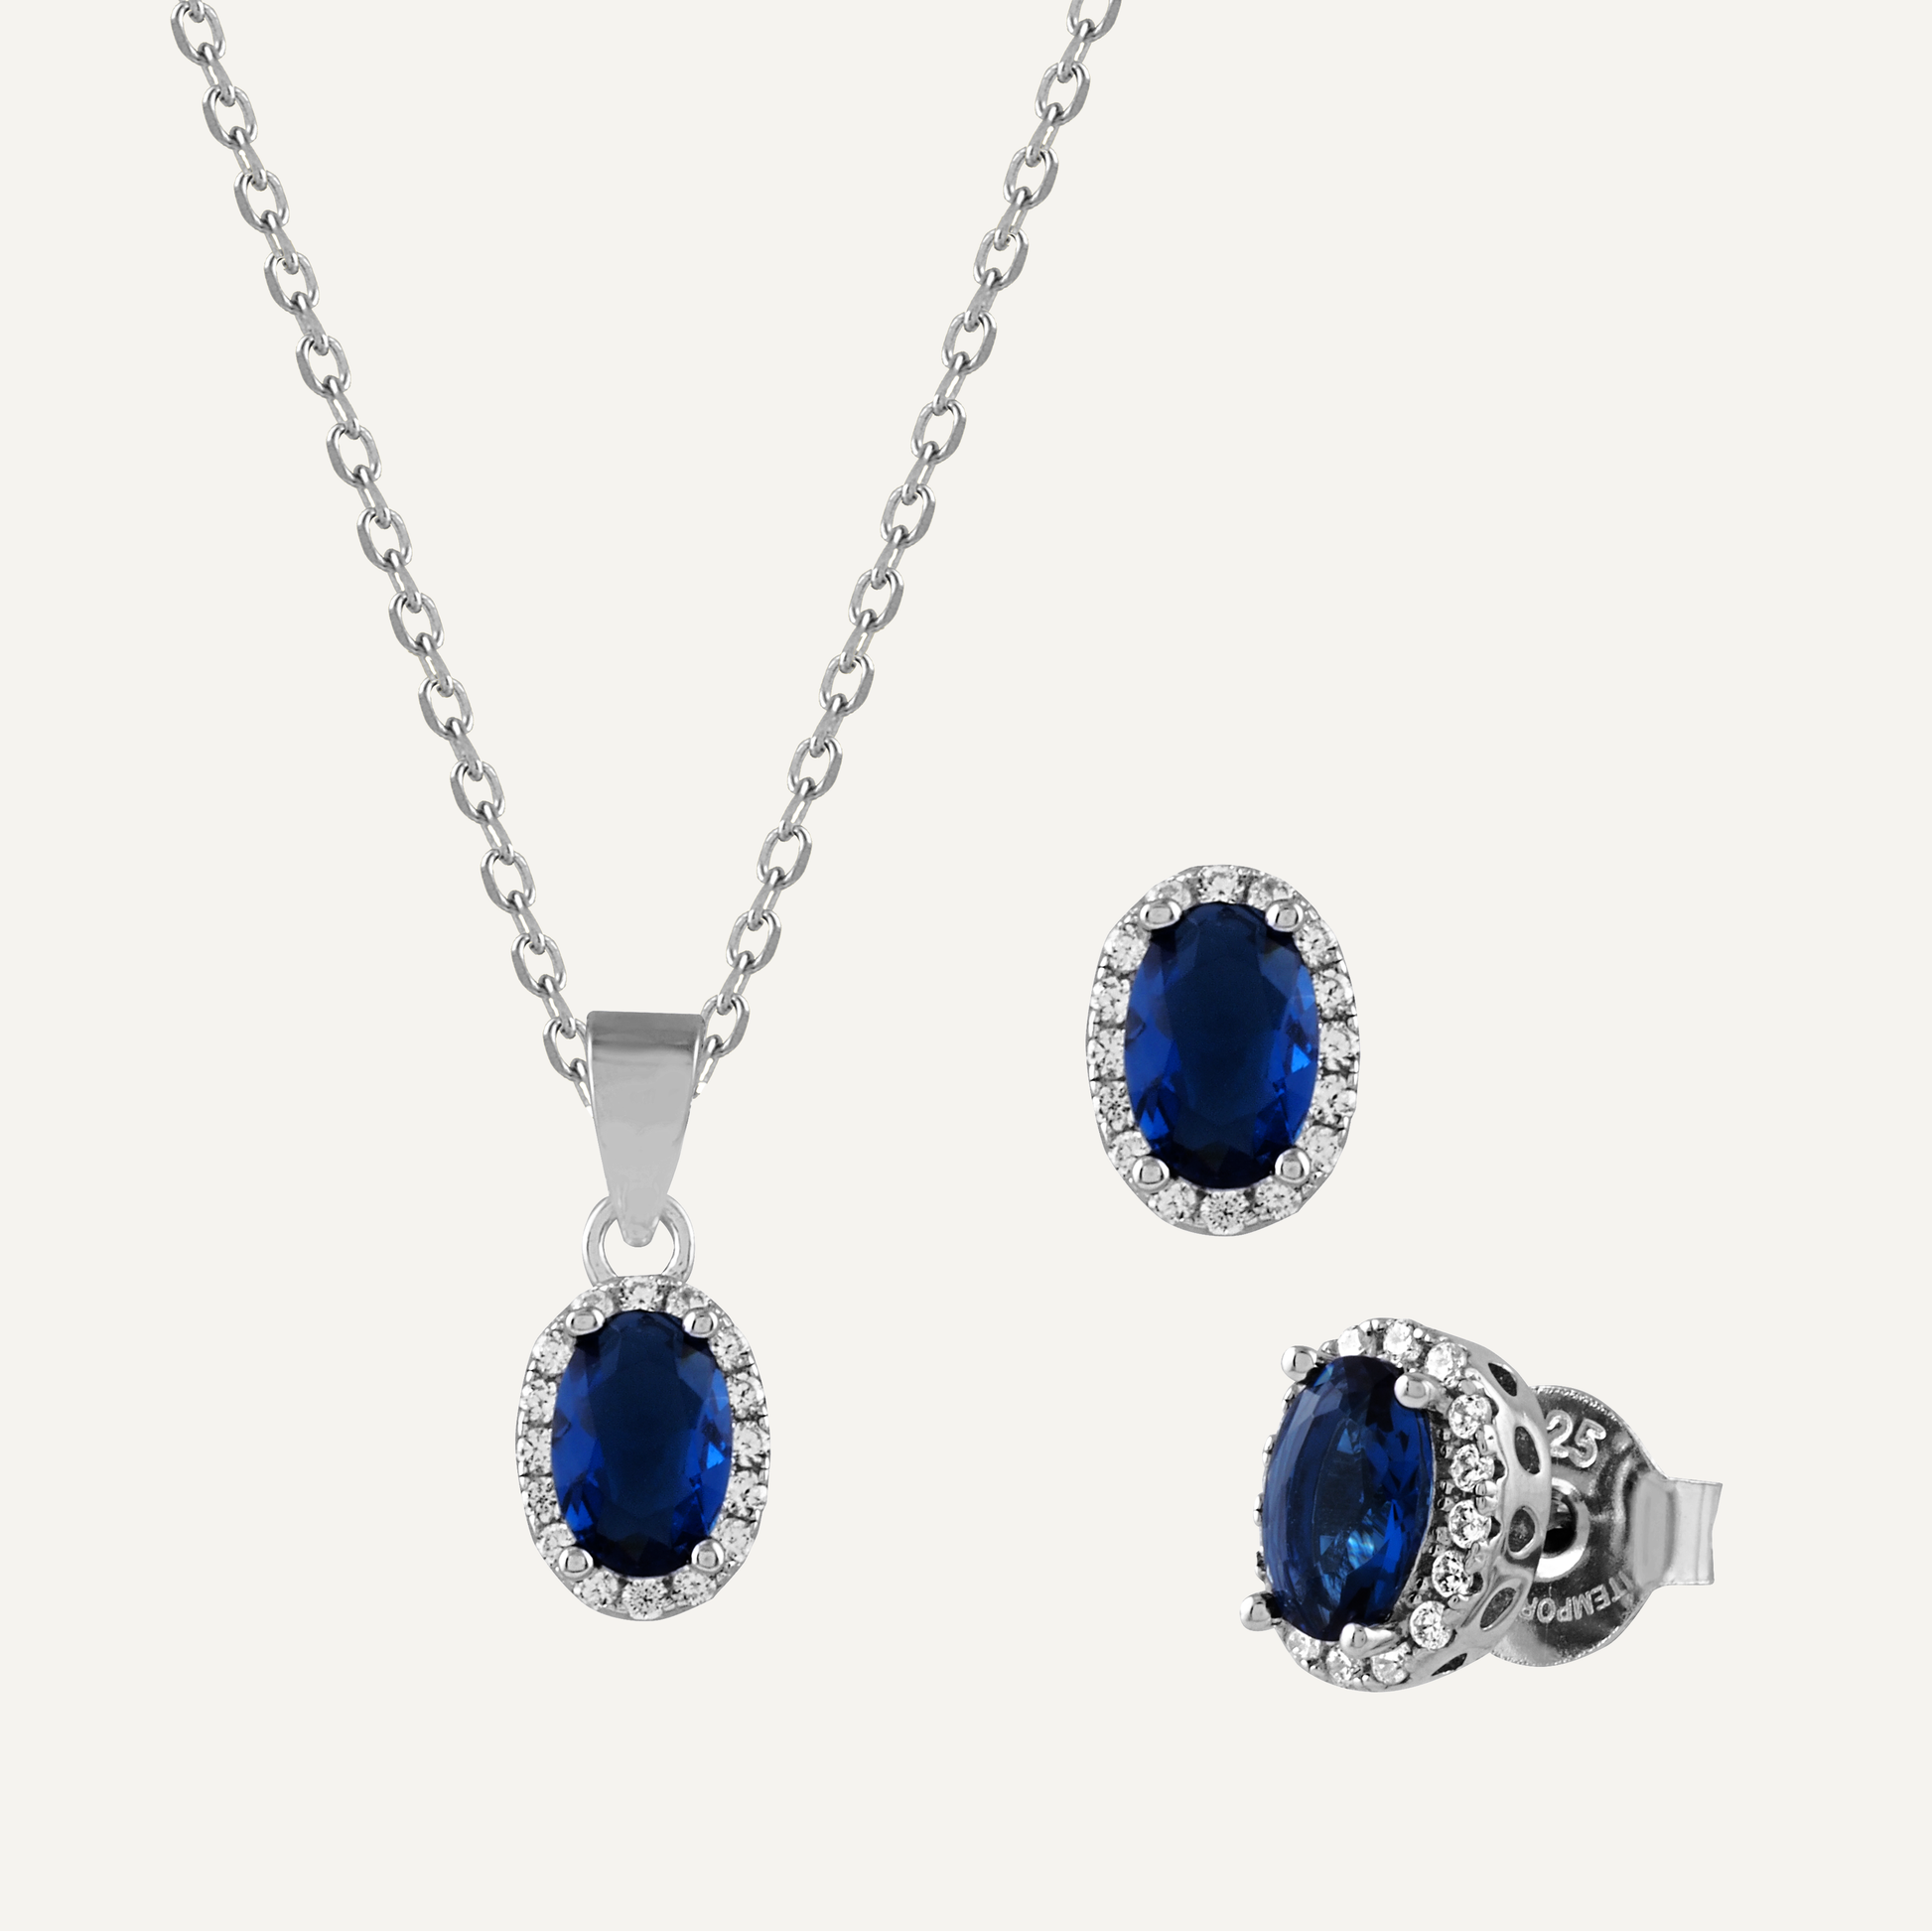 Conjunto oval de collar y pendientes en plata con circonitas blancas y azules